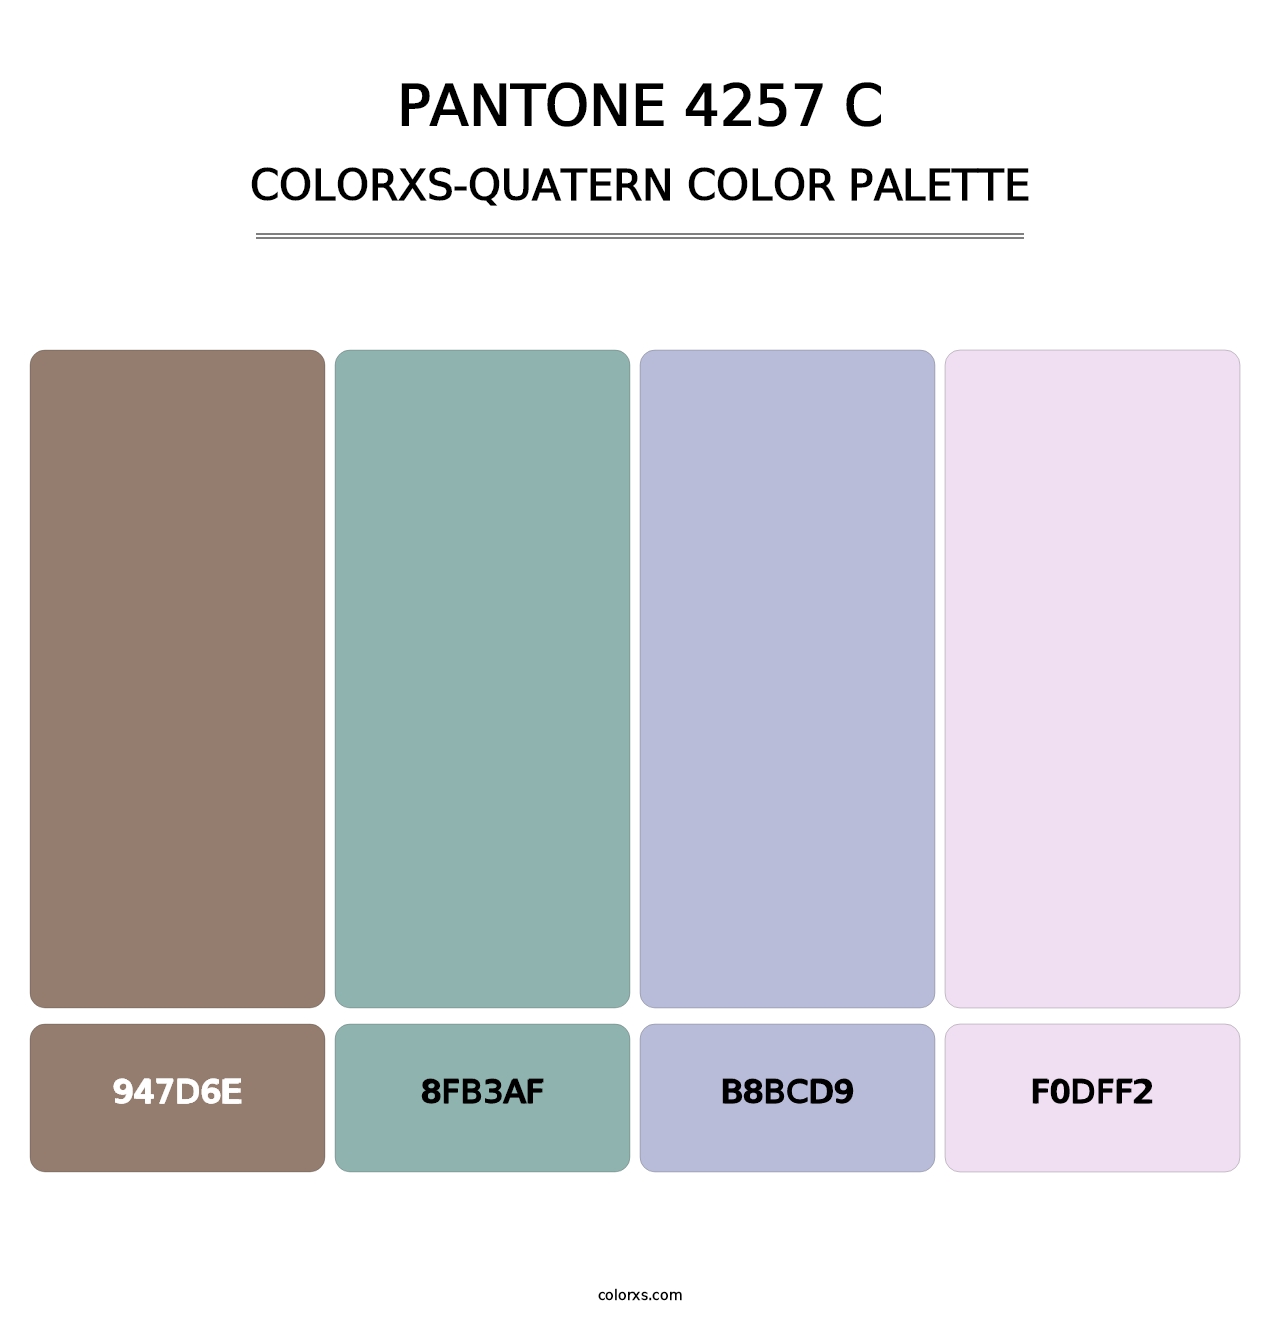 PANTONE 4257 C - Colorxs Quatern Palette